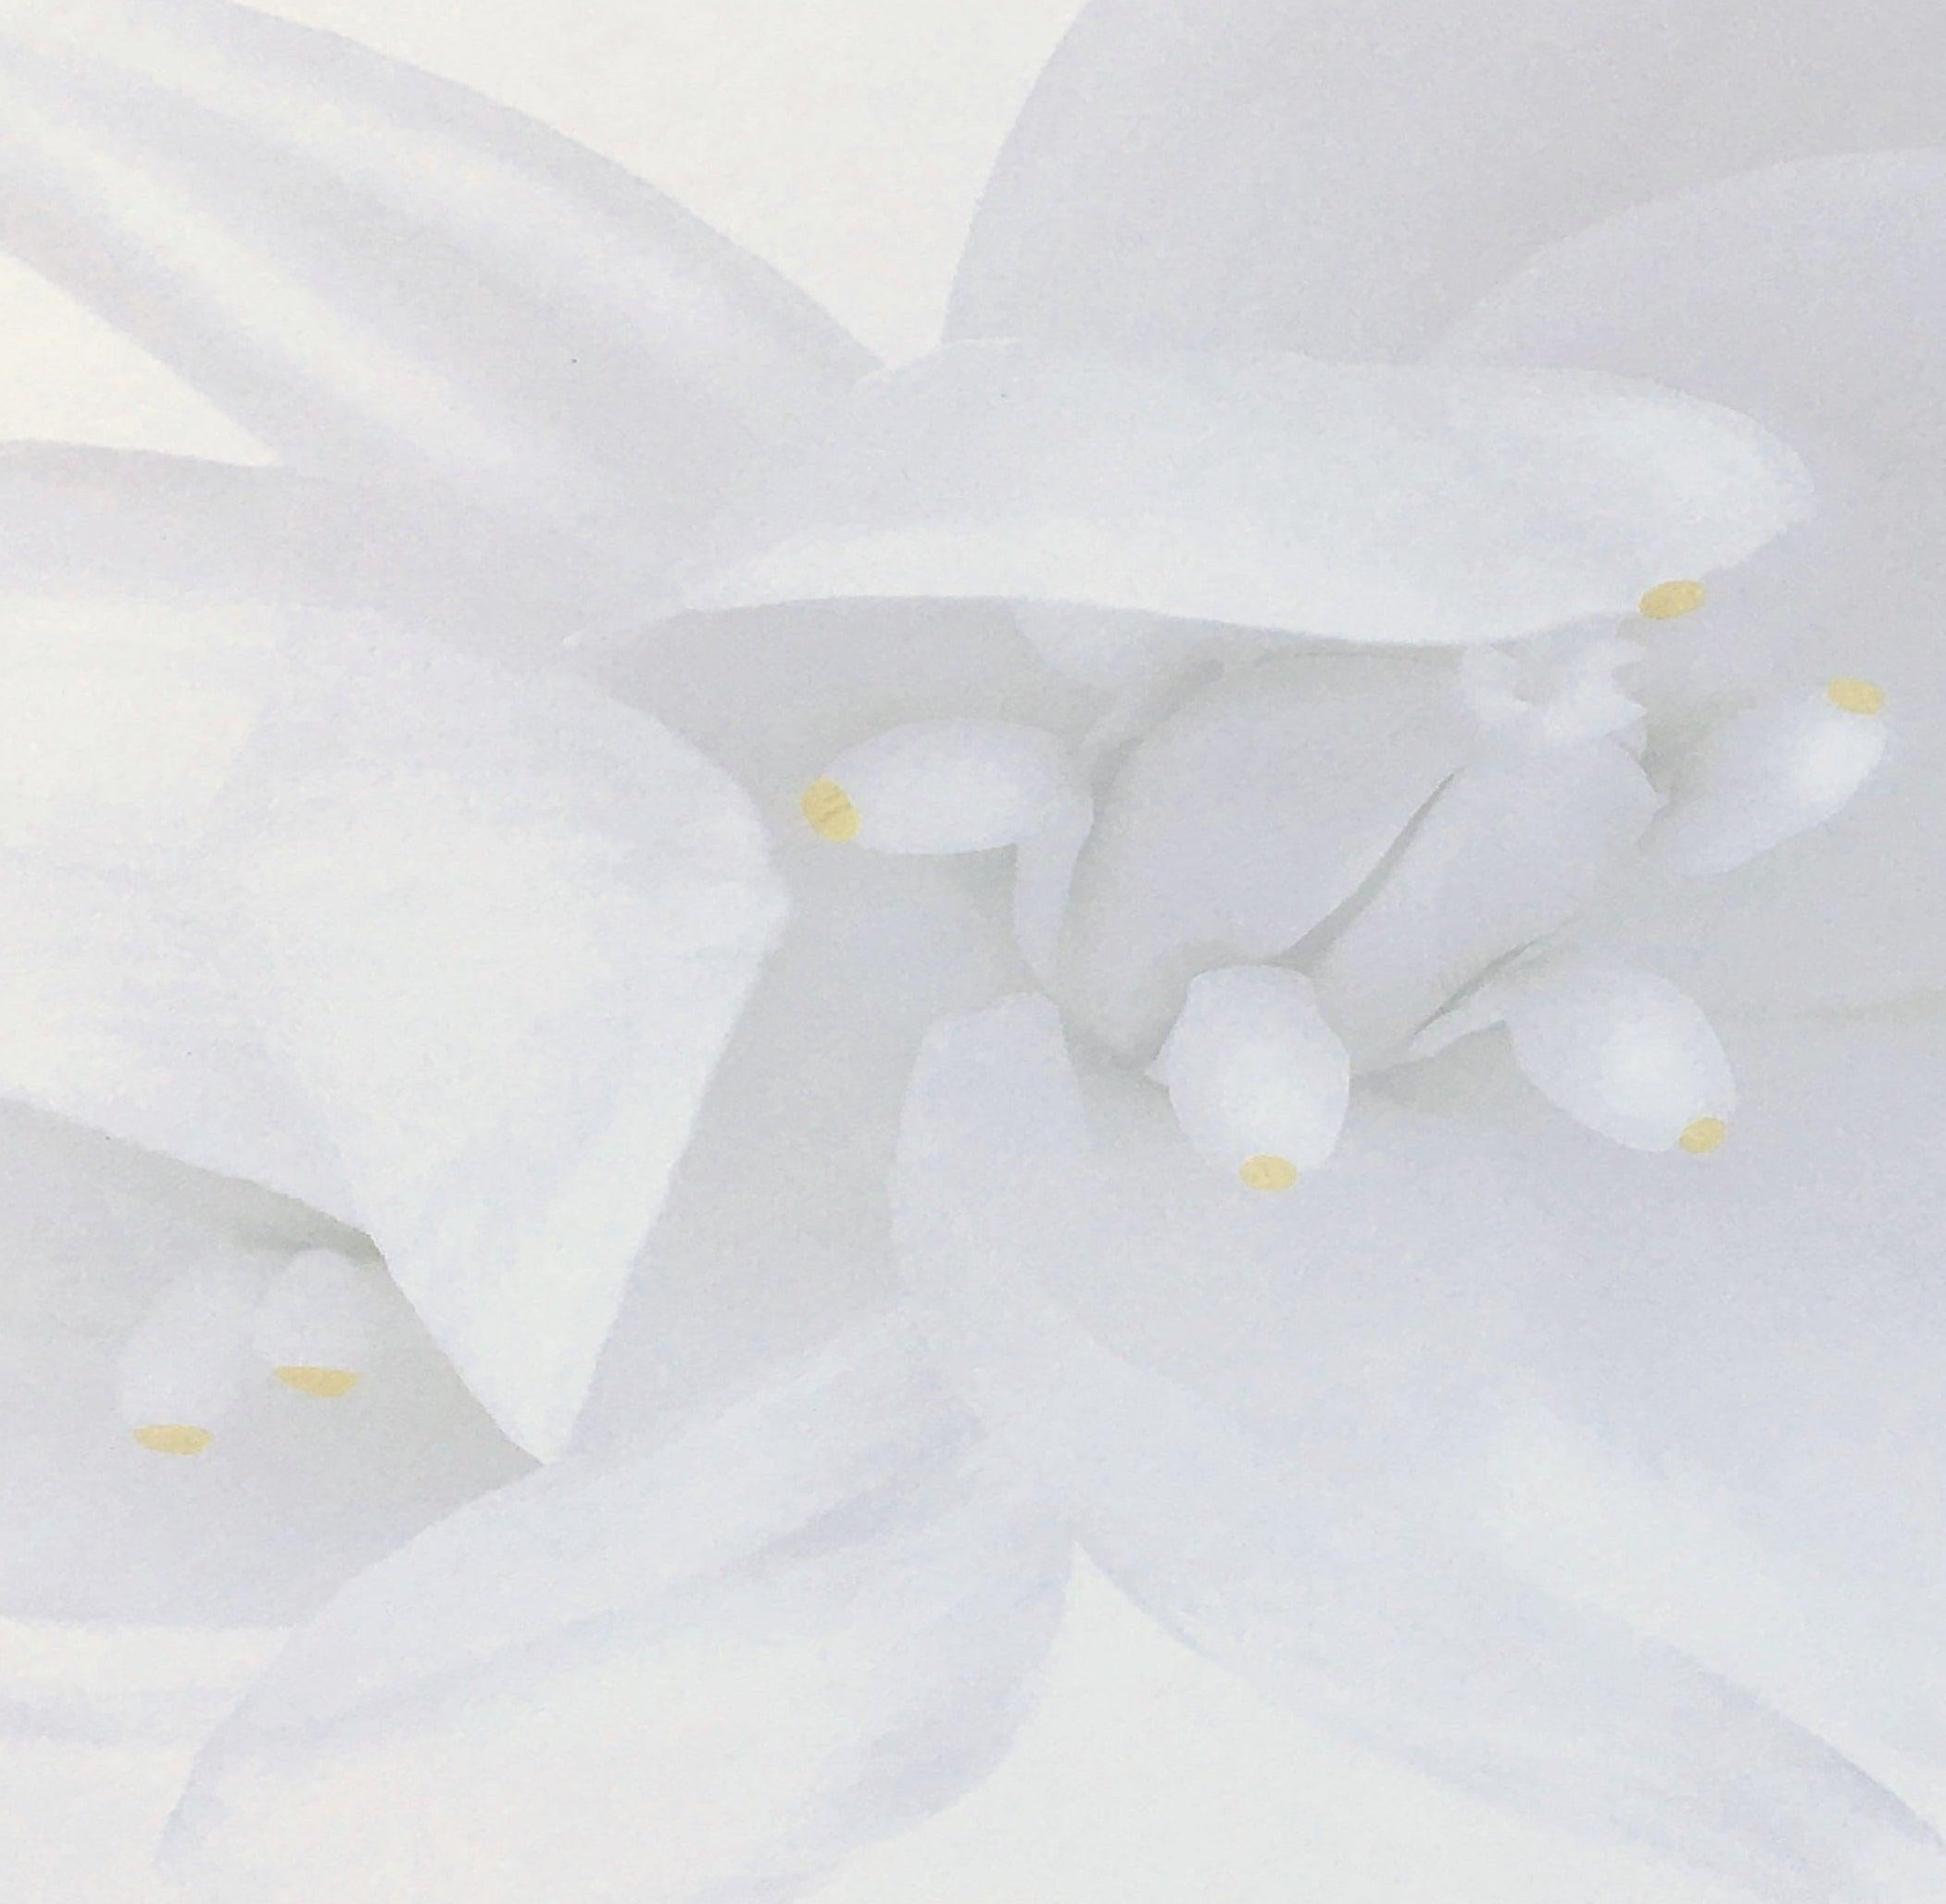 Rapture, Weiße Blumenschrank-Schrank-Fotografie in Schwarz-Weiß auf Plexiglas (Grau), Black and White Photograph, von Iran Issa-Khan